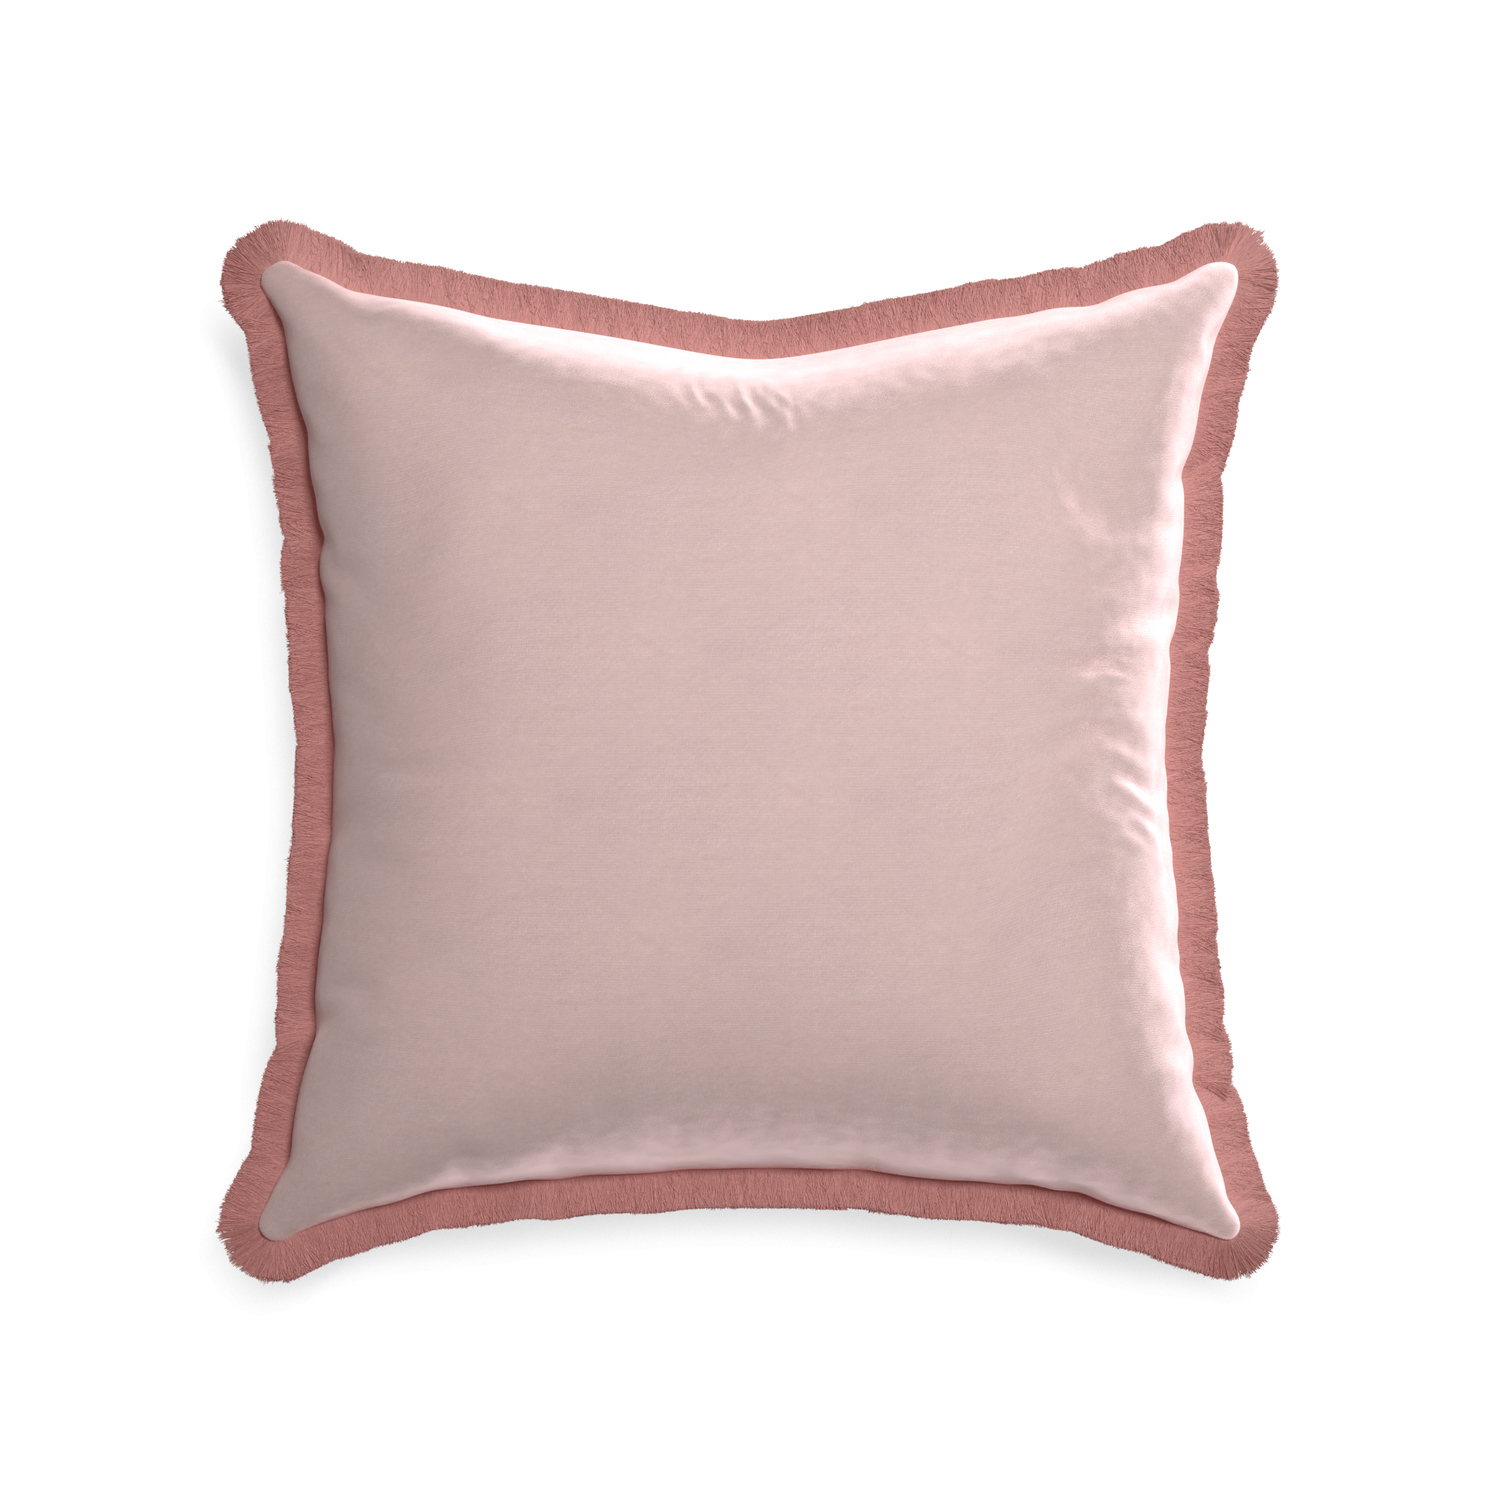 22-square rose velvet custom pillow with d fringe on white background